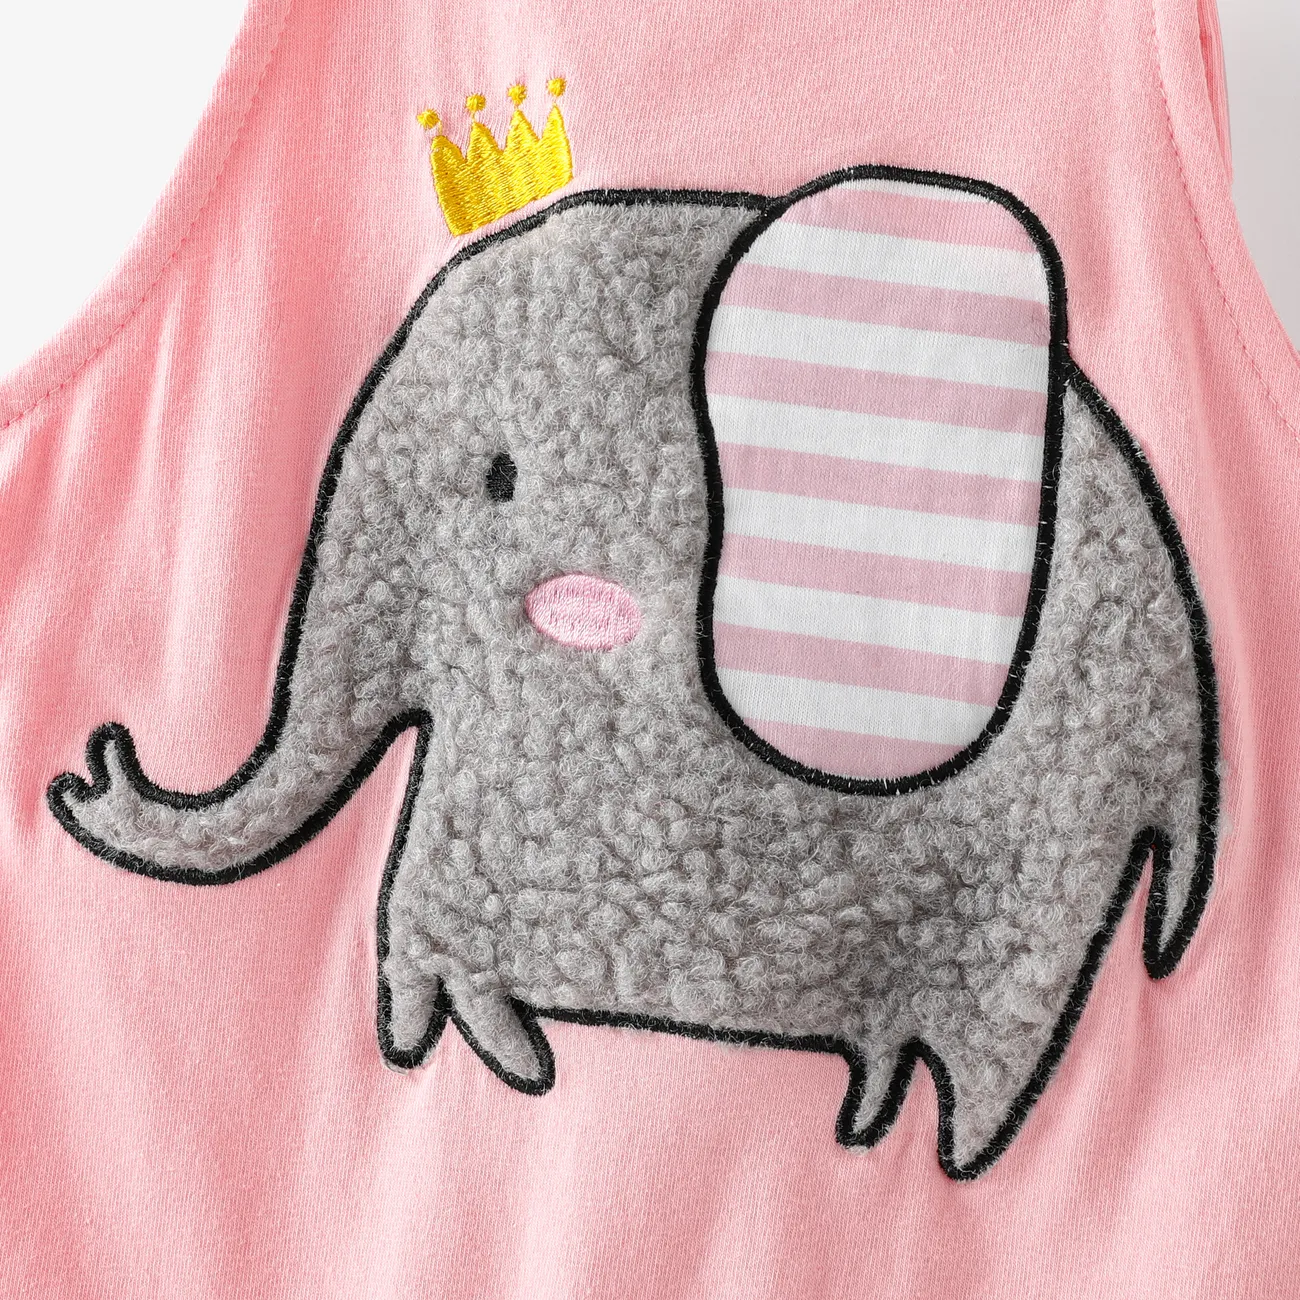 3pcs Baby Girl Elephant Pattern Hyper-Tactile 3D Design Set Pink big image 1